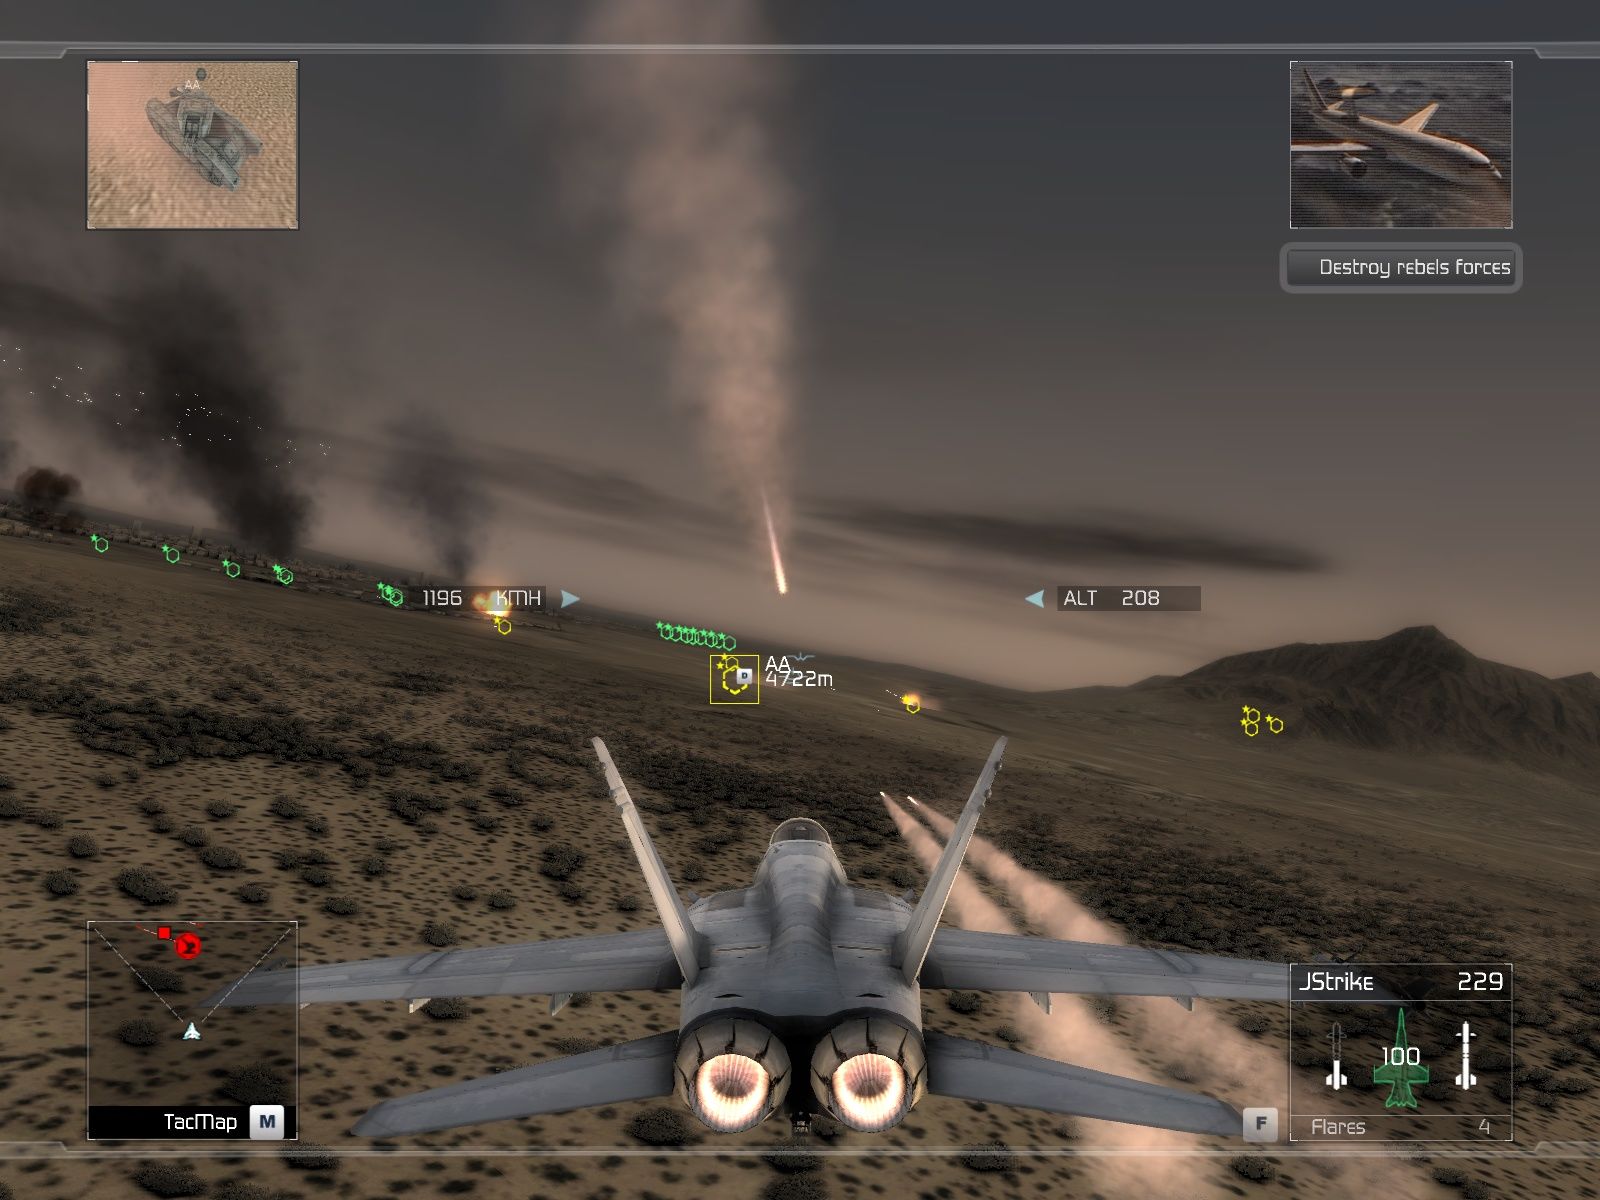 3d fighter jet games